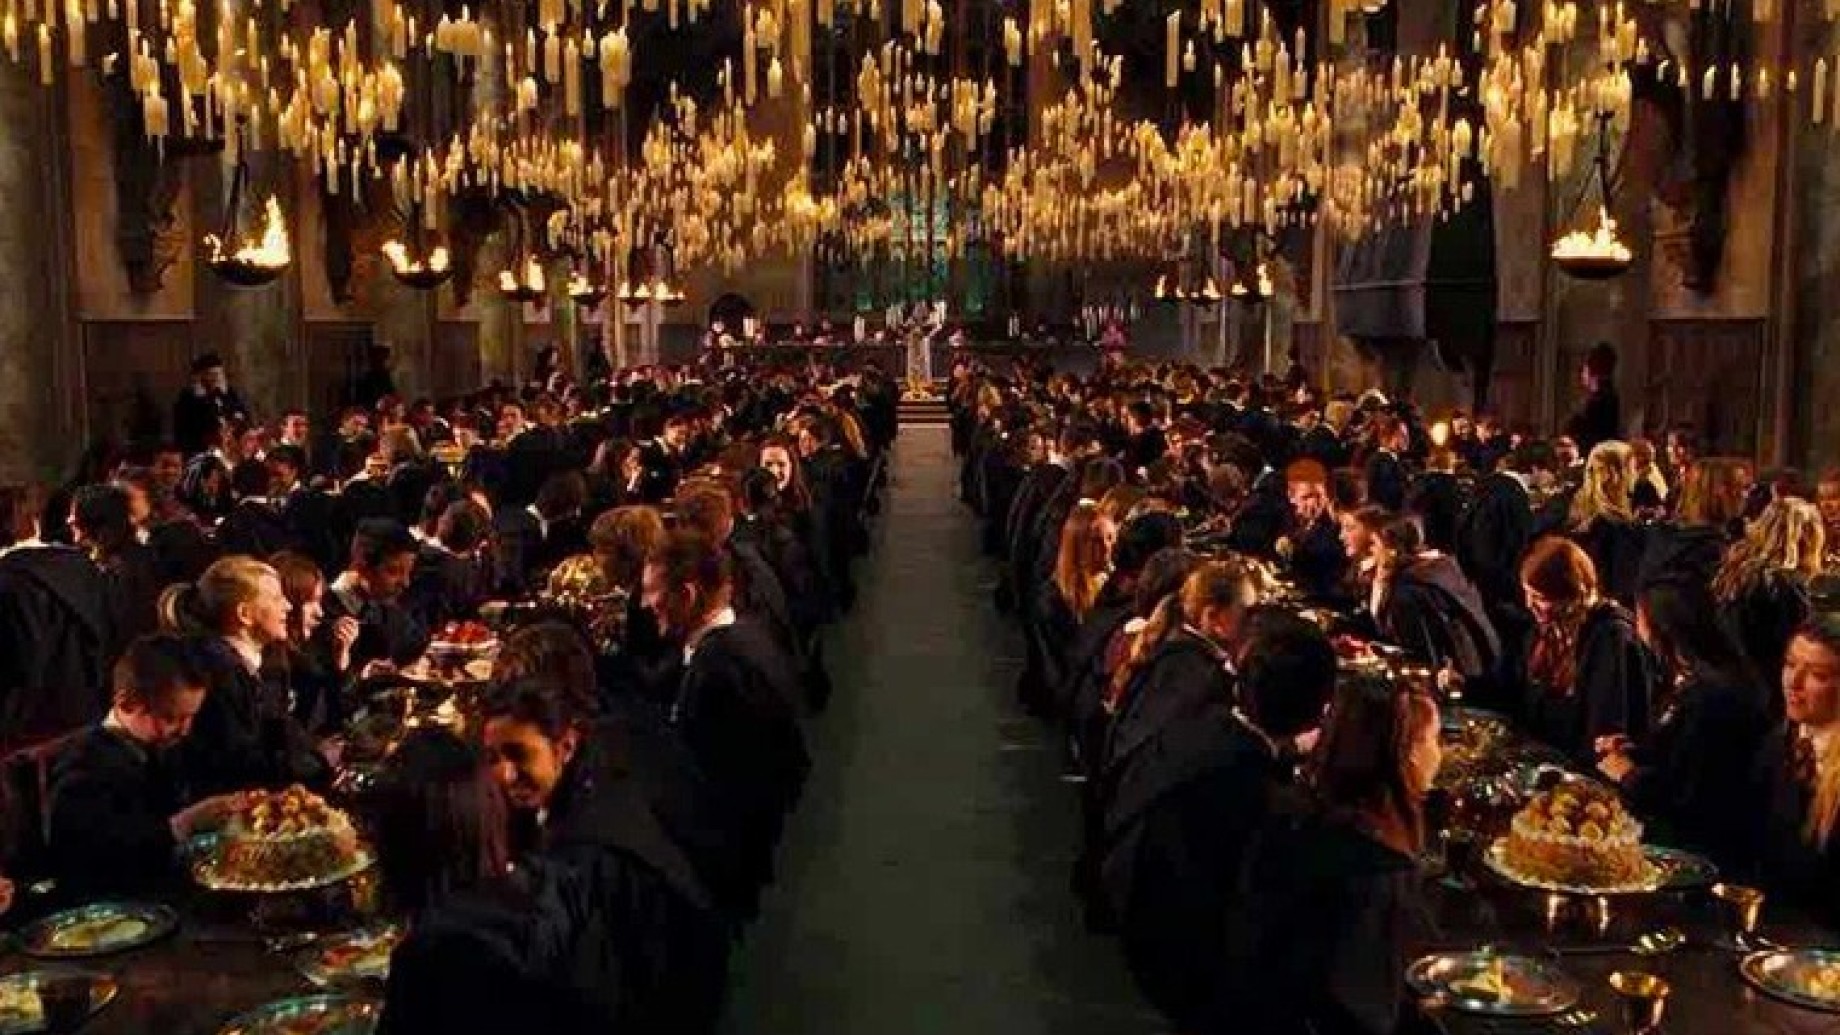 Immagini Natalizie Harry Potter.Natale A Hogwarts Sara Possibile Cenare Nella Sala Grande Del Castello Di Harry Potter Il Milanese Imbruttito